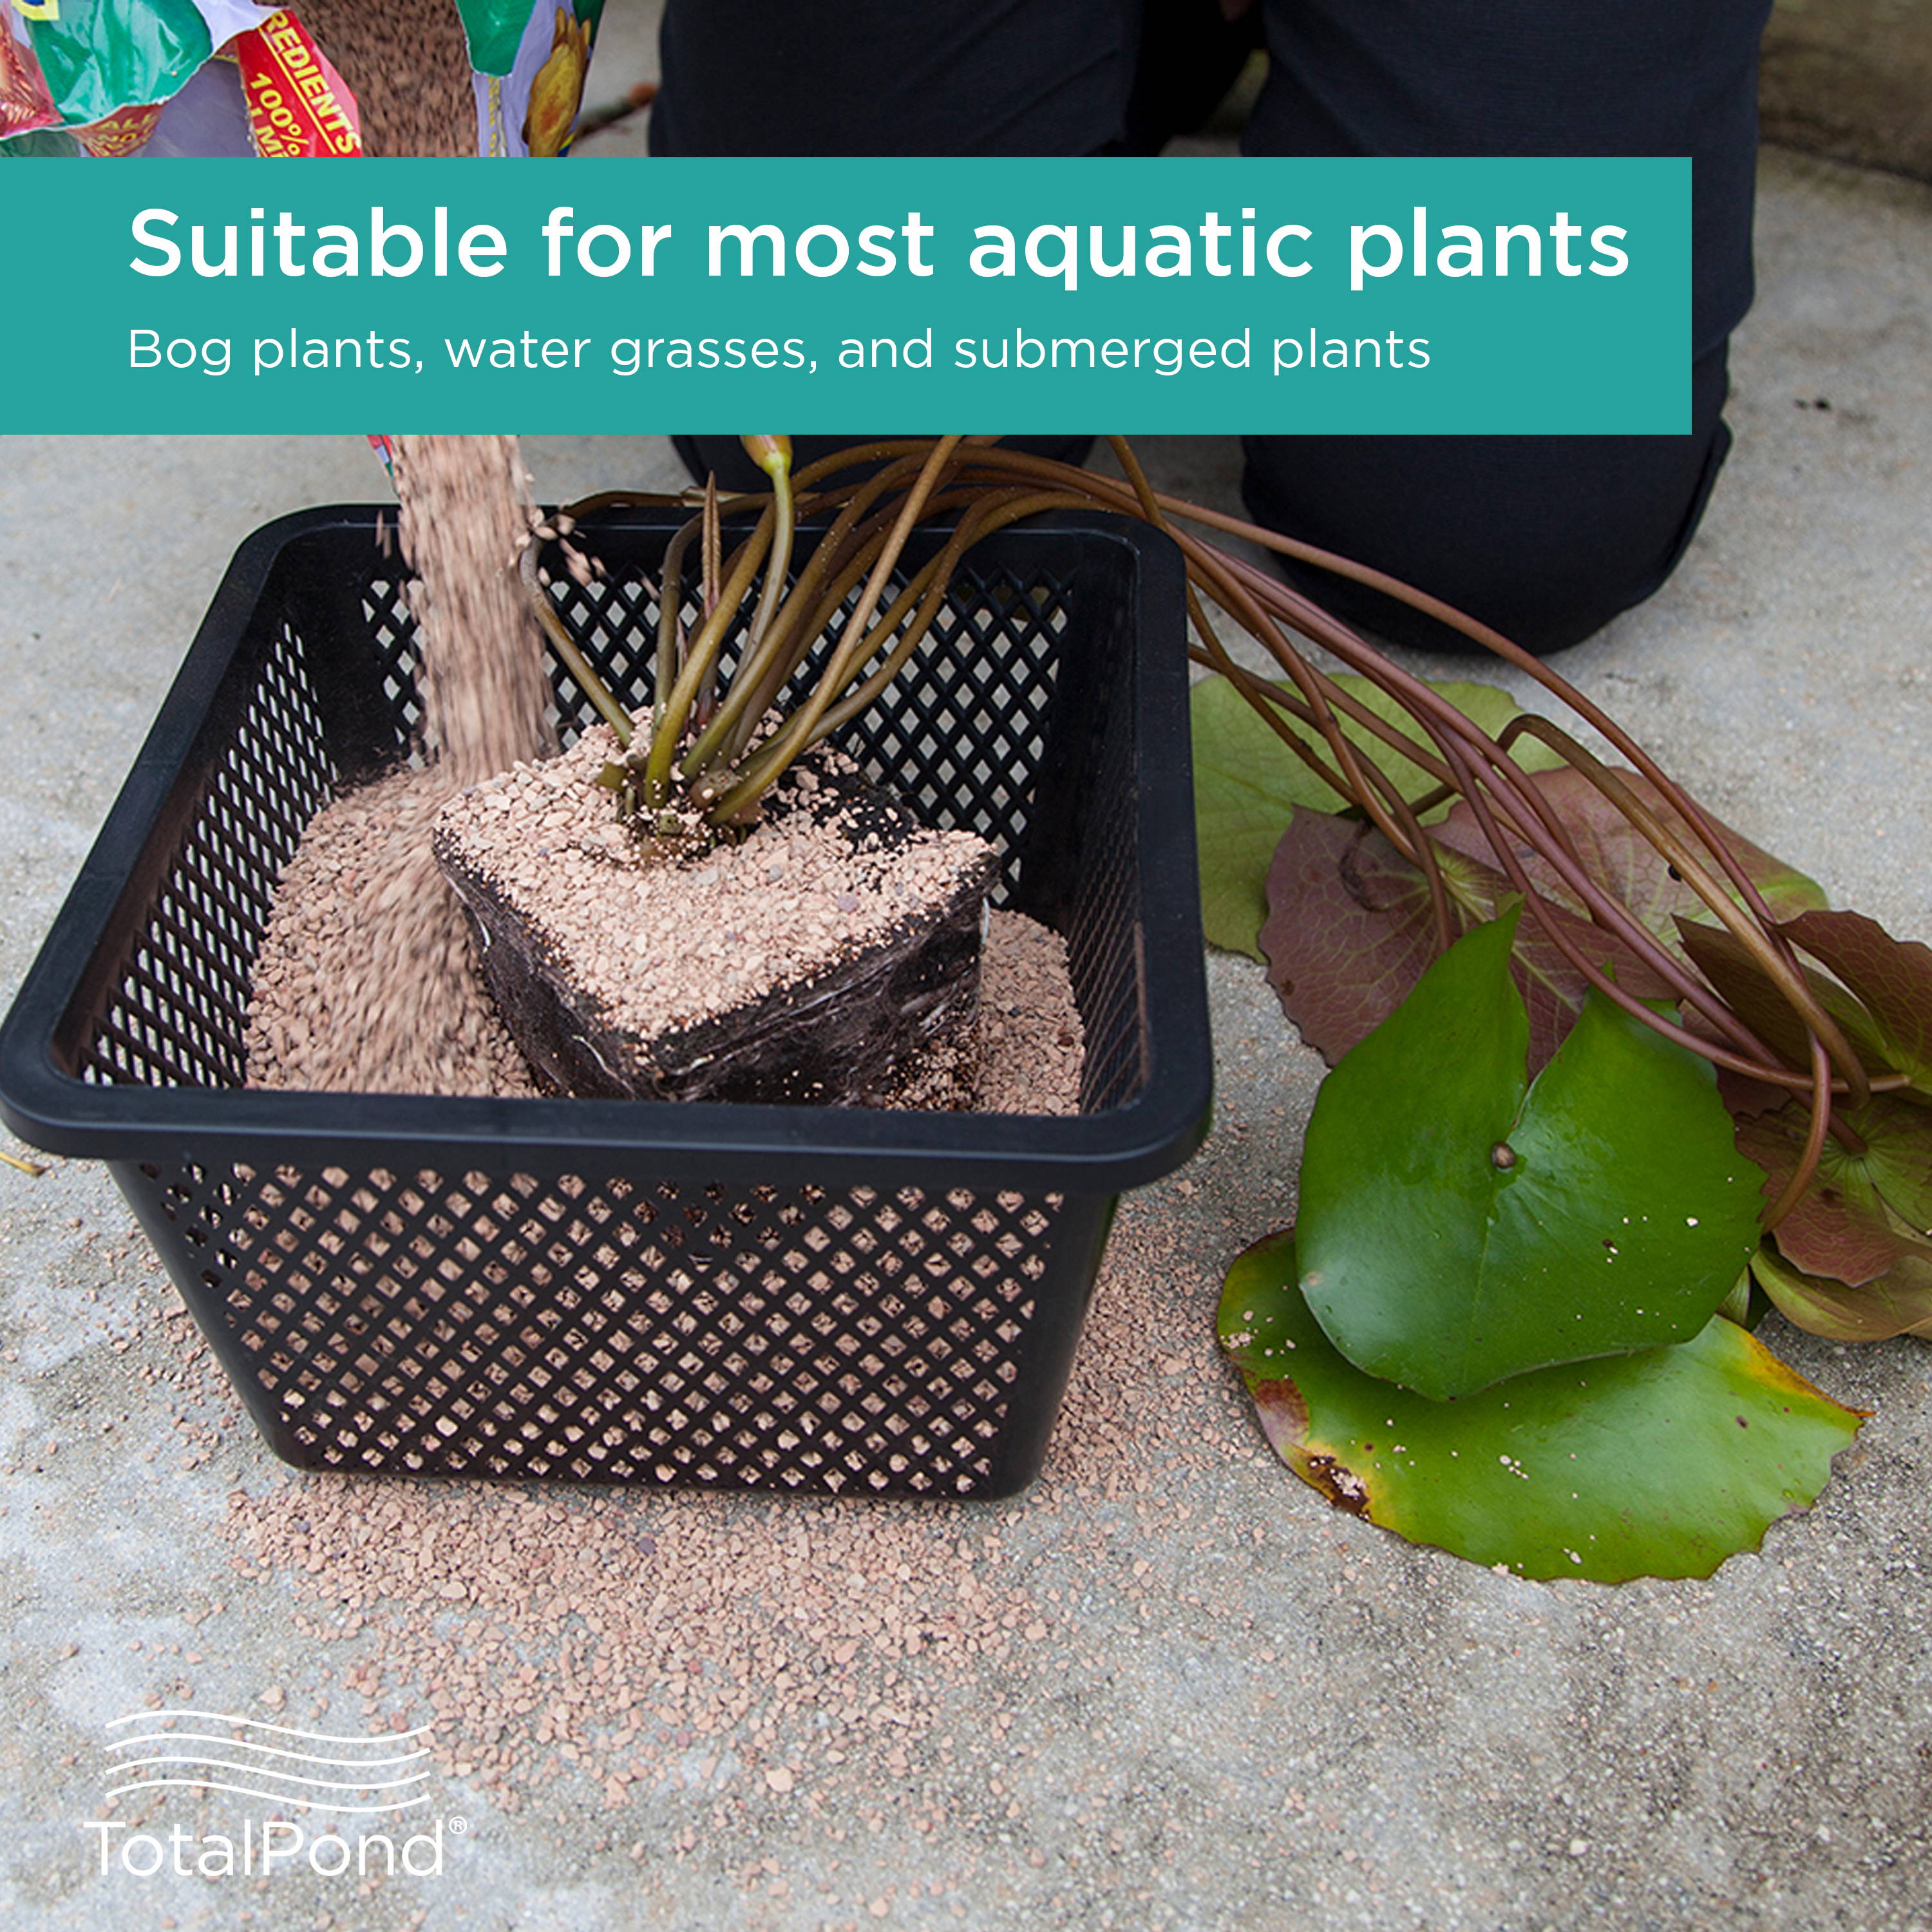 Plant Basket is suitable for most aquatic plants